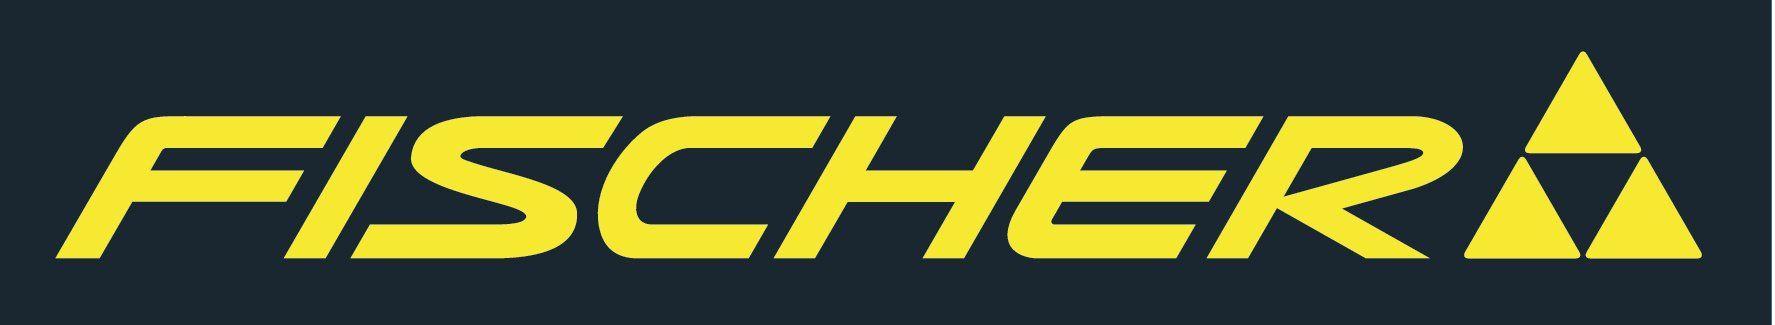 Fischer Logo - LogoDix